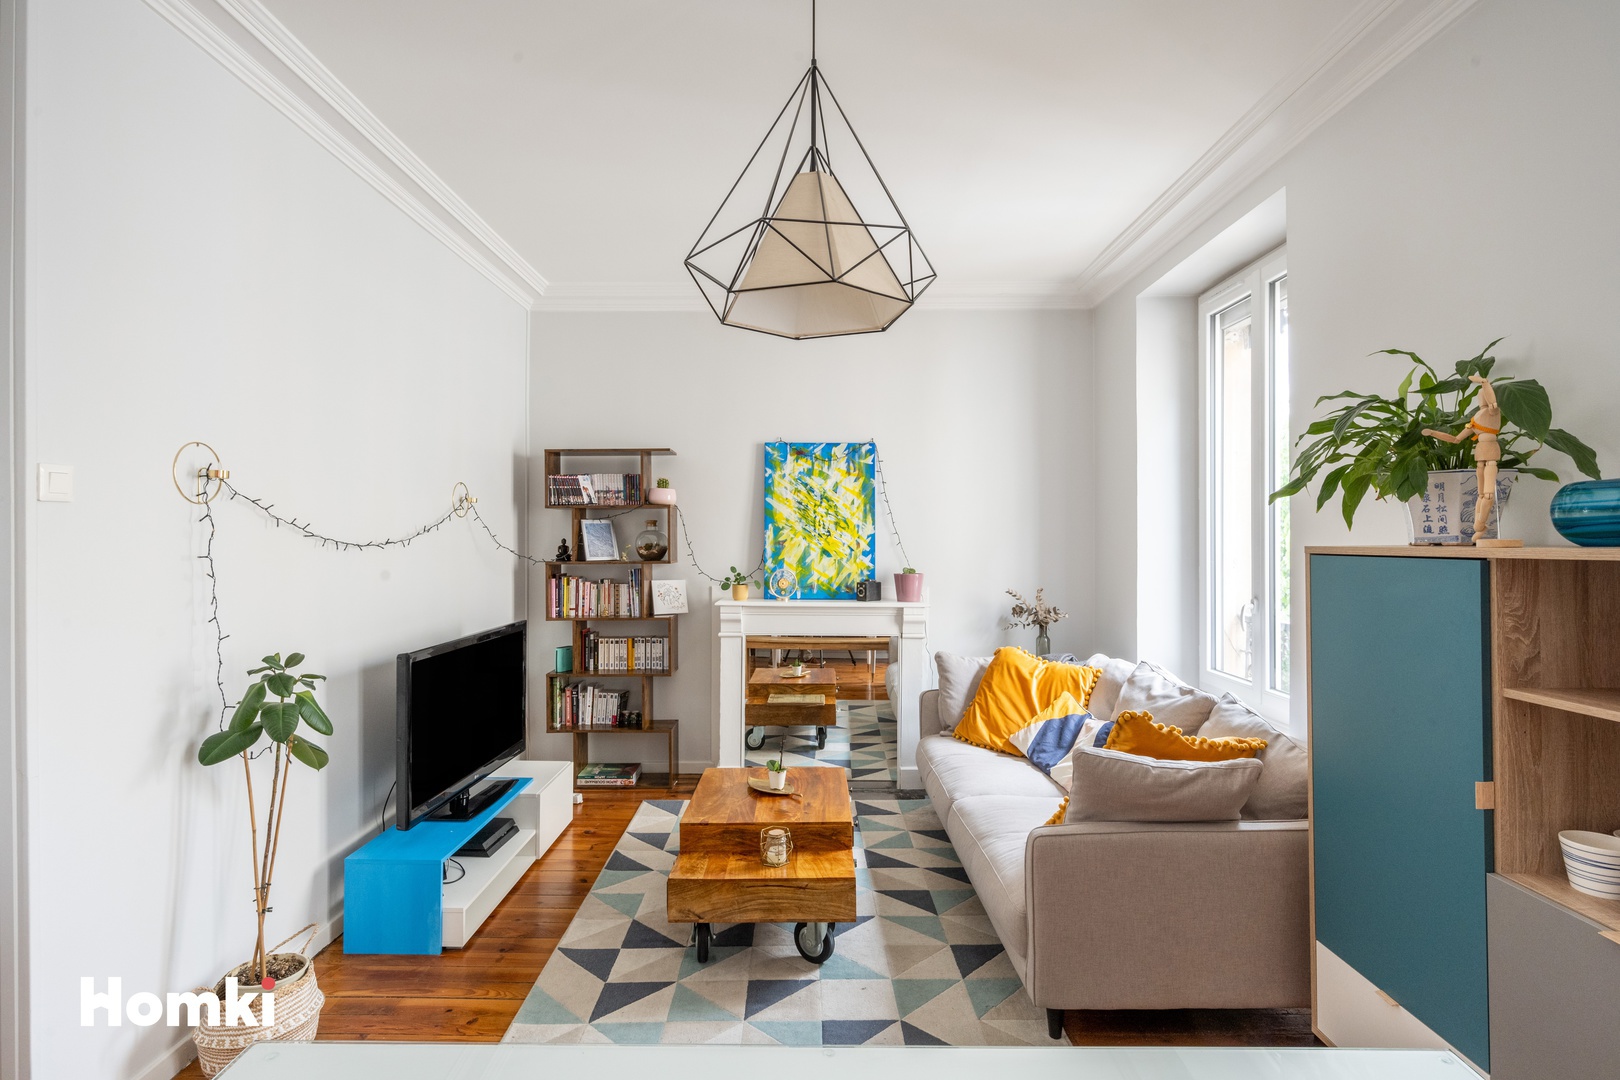 Homki - Vente Appartement  de 58.0 m² à Grenoble 38000